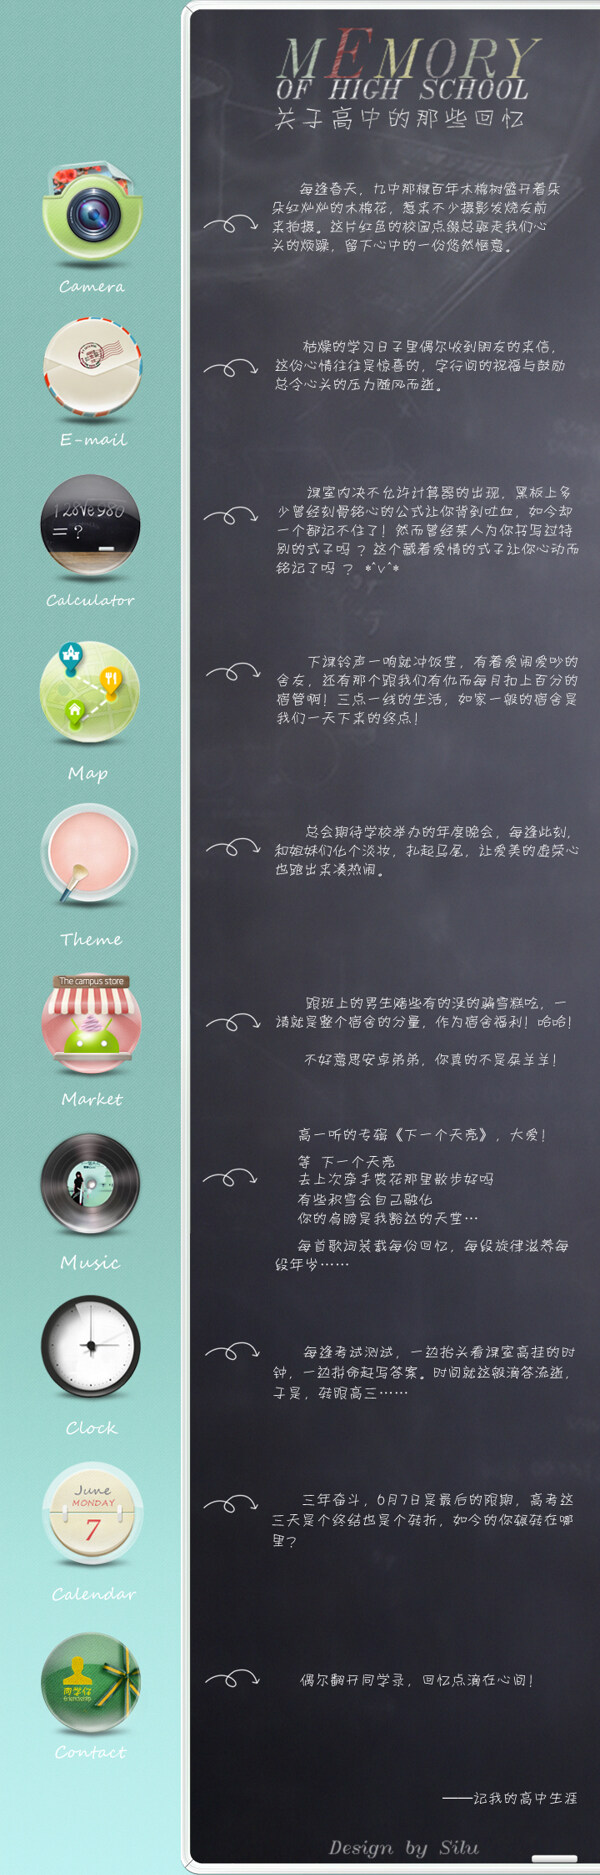 UI手机主题图标青春回忆九江中学